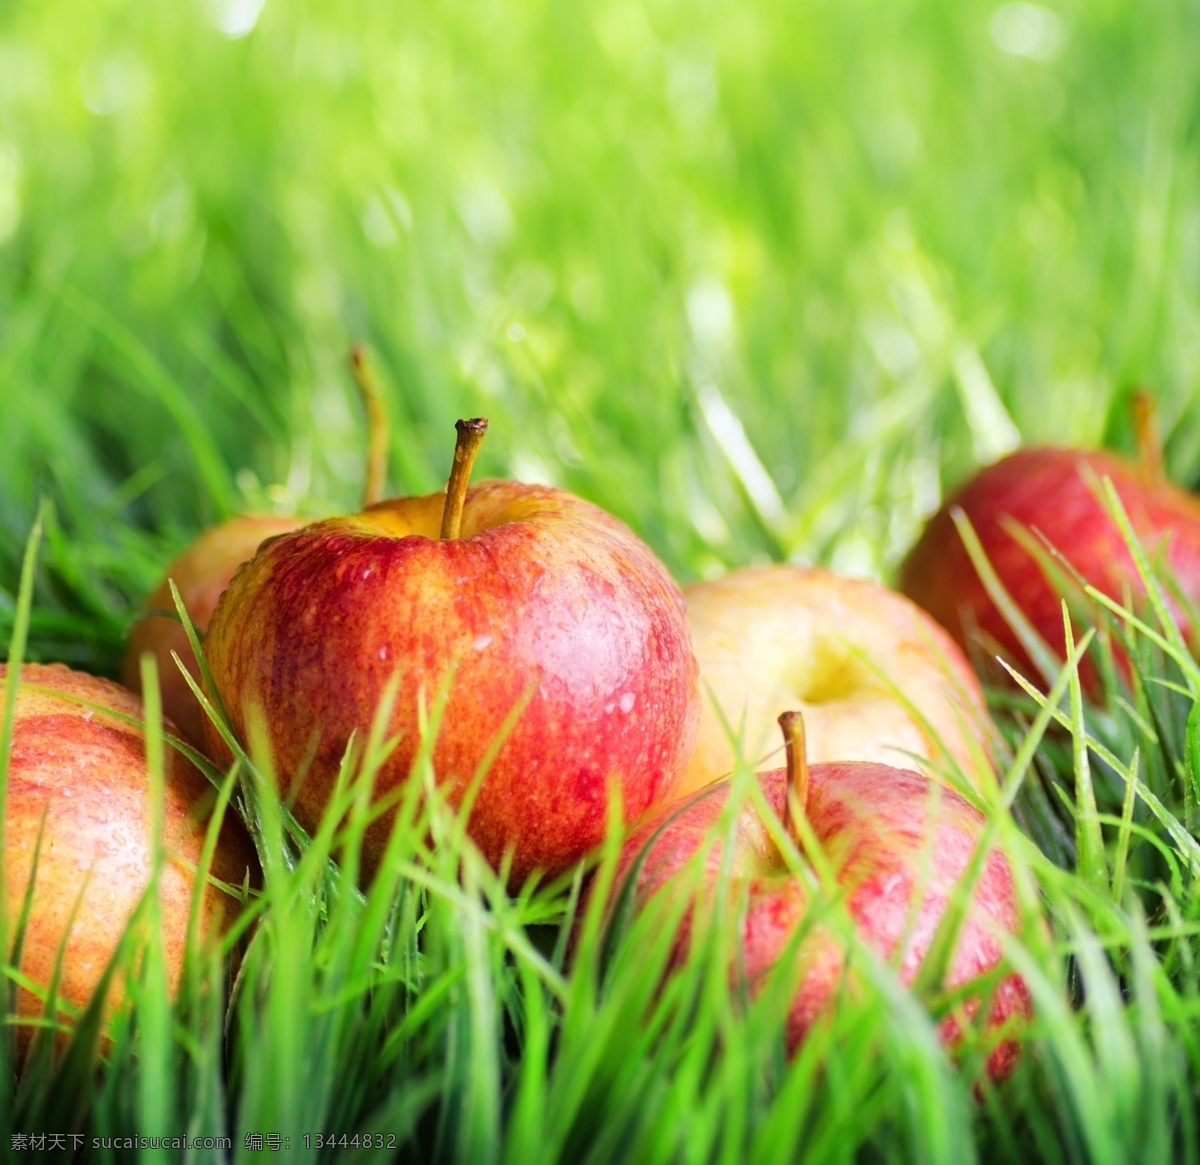 草地 上 苹果 绿地 新鲜苹果 新鲜水果 苹果摄影 苹果图片 餐饮美食